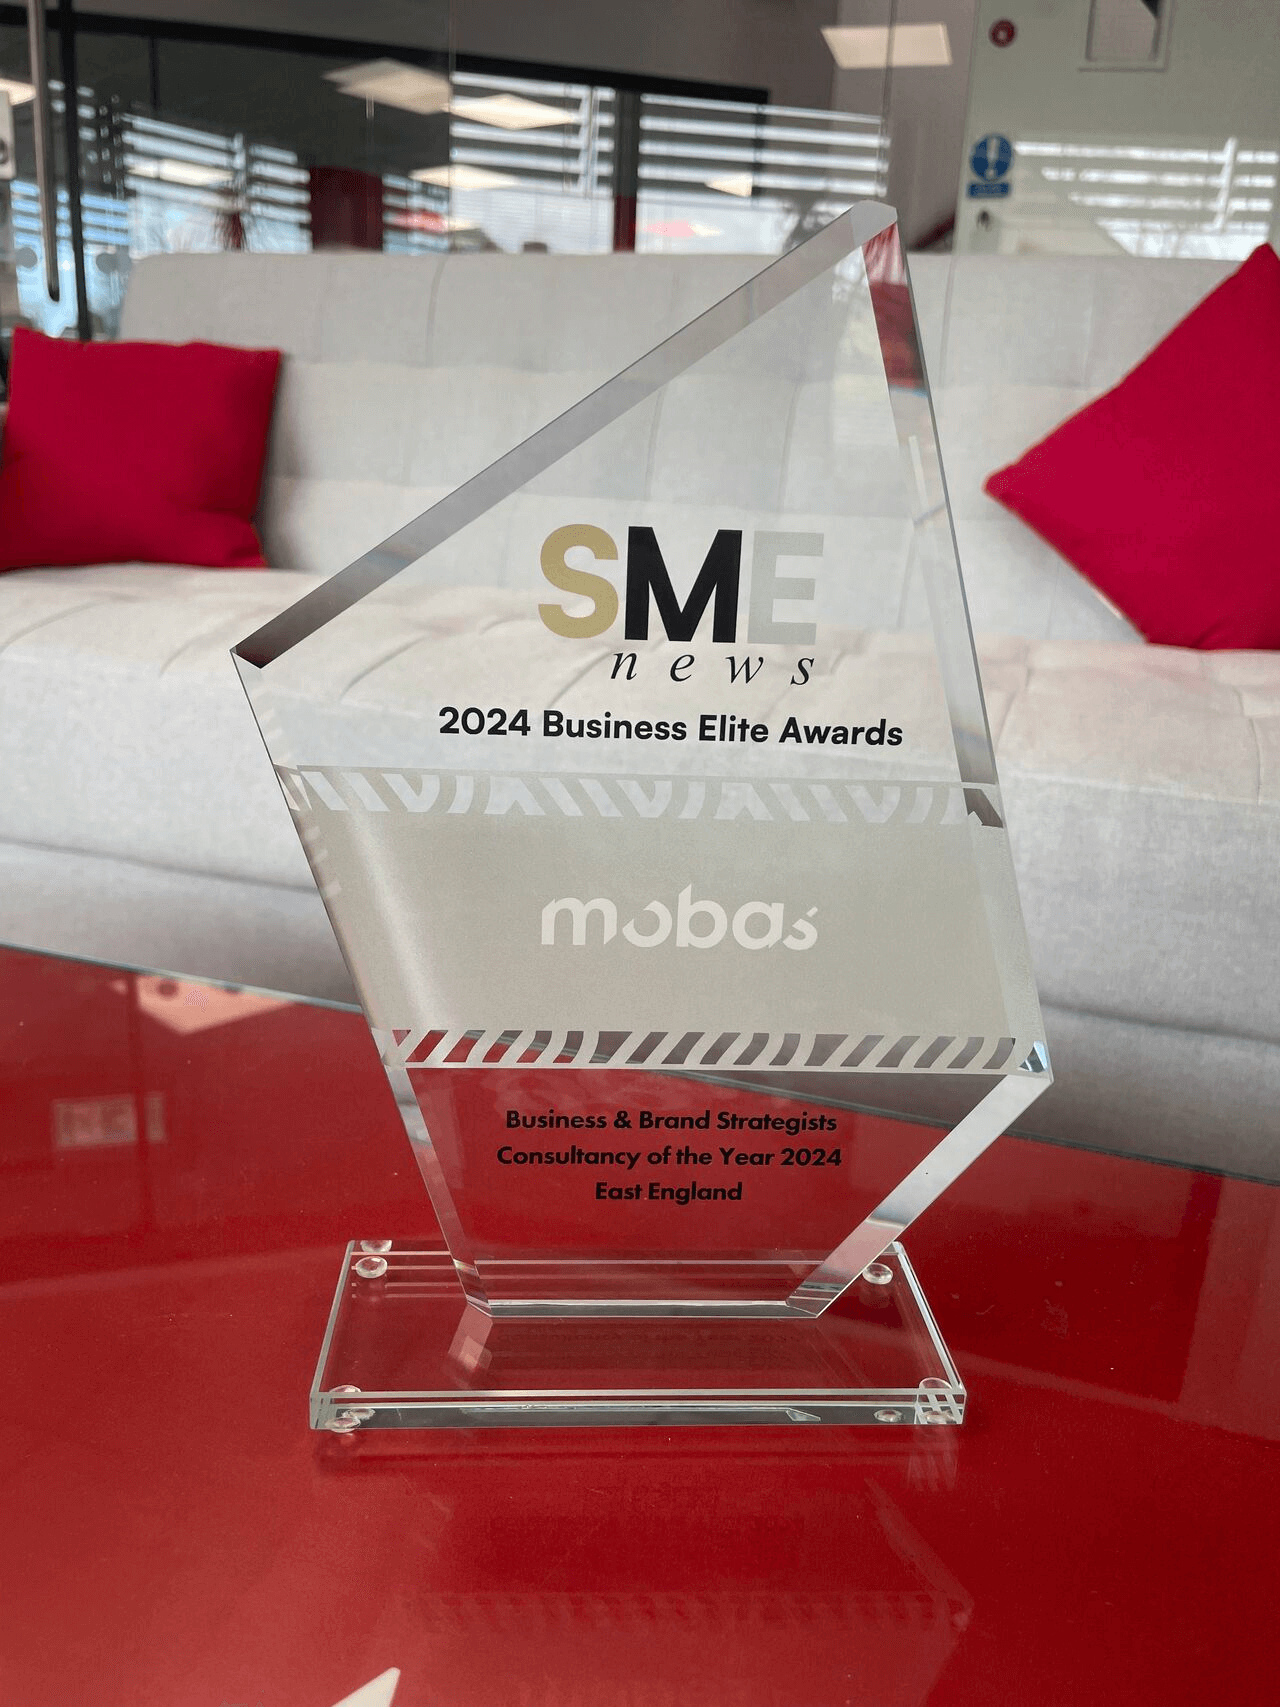 Mobas Celebrates Prestigious SME News 2024 Business Elite Award Win